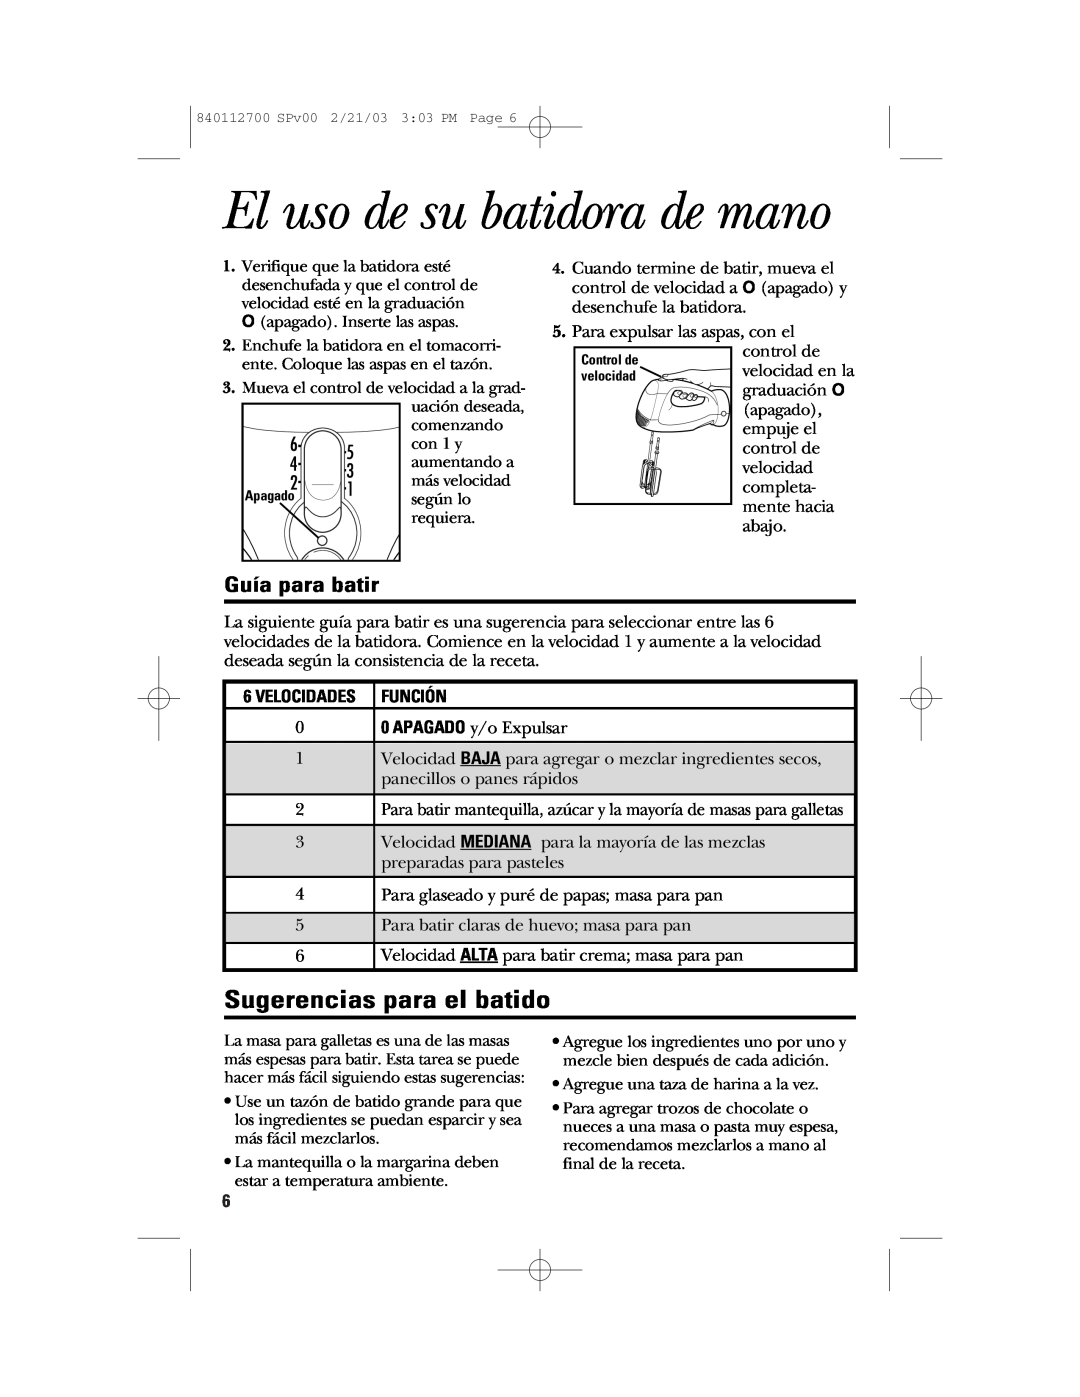 GE 840112700, 168951 manual El uso de su batidora de mano, Sugerencias para el batido, Guía para batir, Velocidades Función 